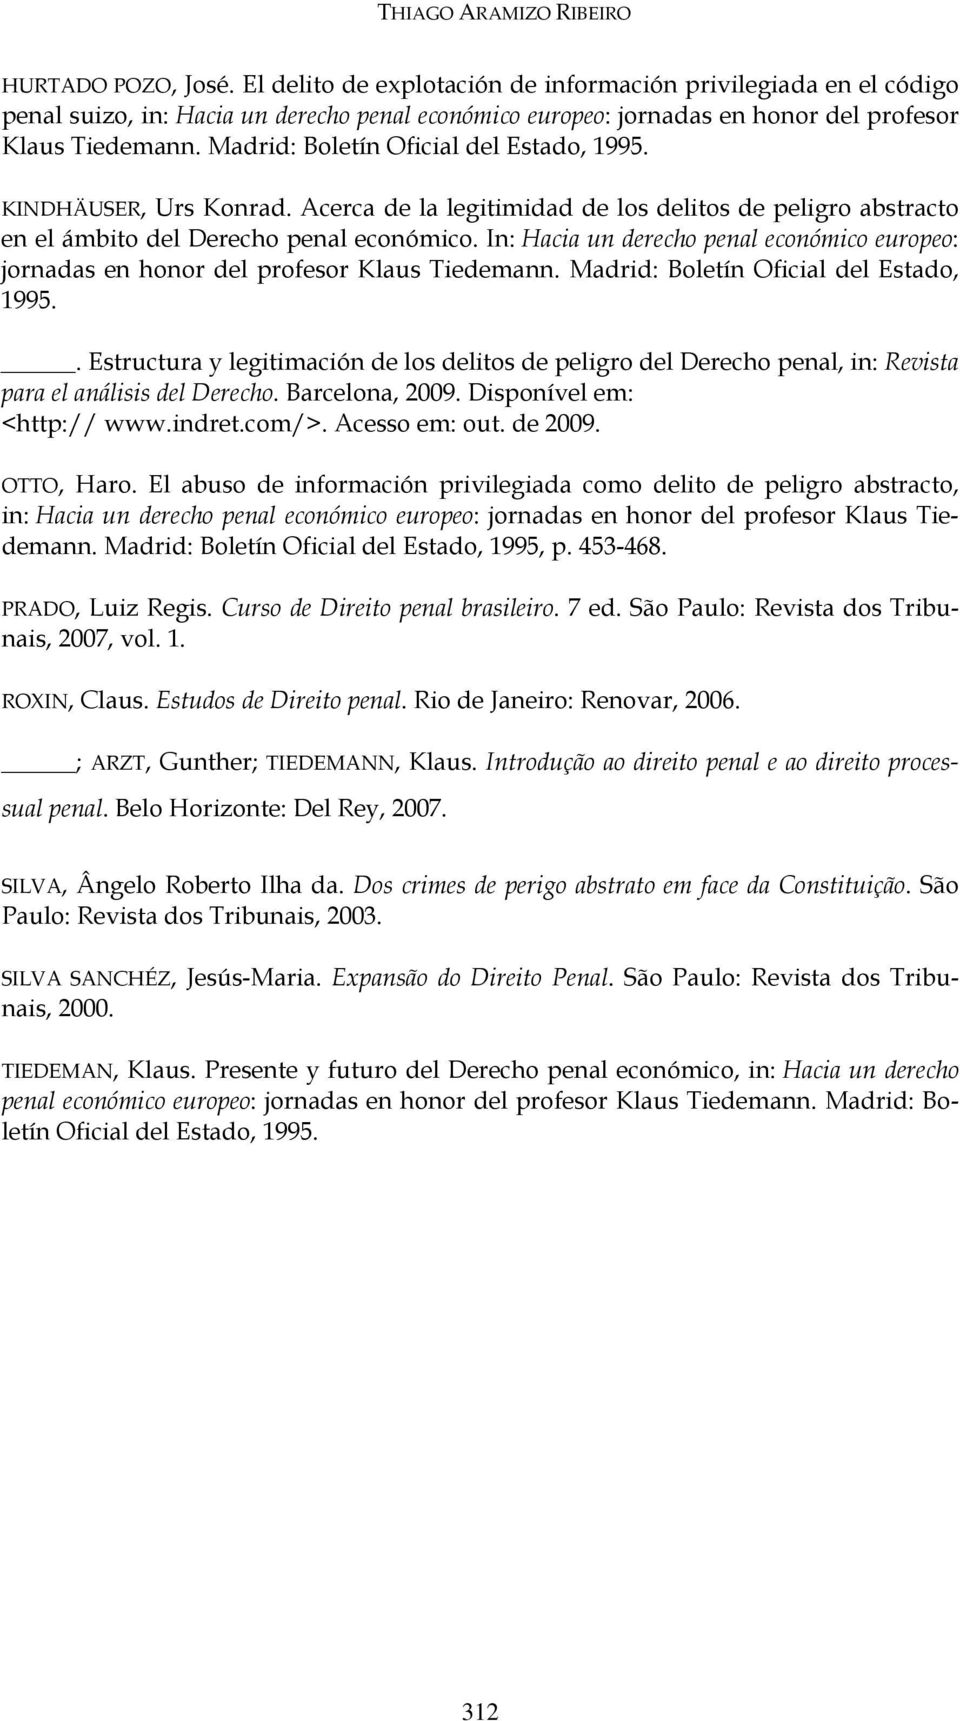 Madrid: Boletín Oficial del Estado, 1995. KINDHÄUSER, Urs Konrad. Acerca de la legitimidad de los delitos de peligro abstracto en el ámbito del Derecho penal económico.